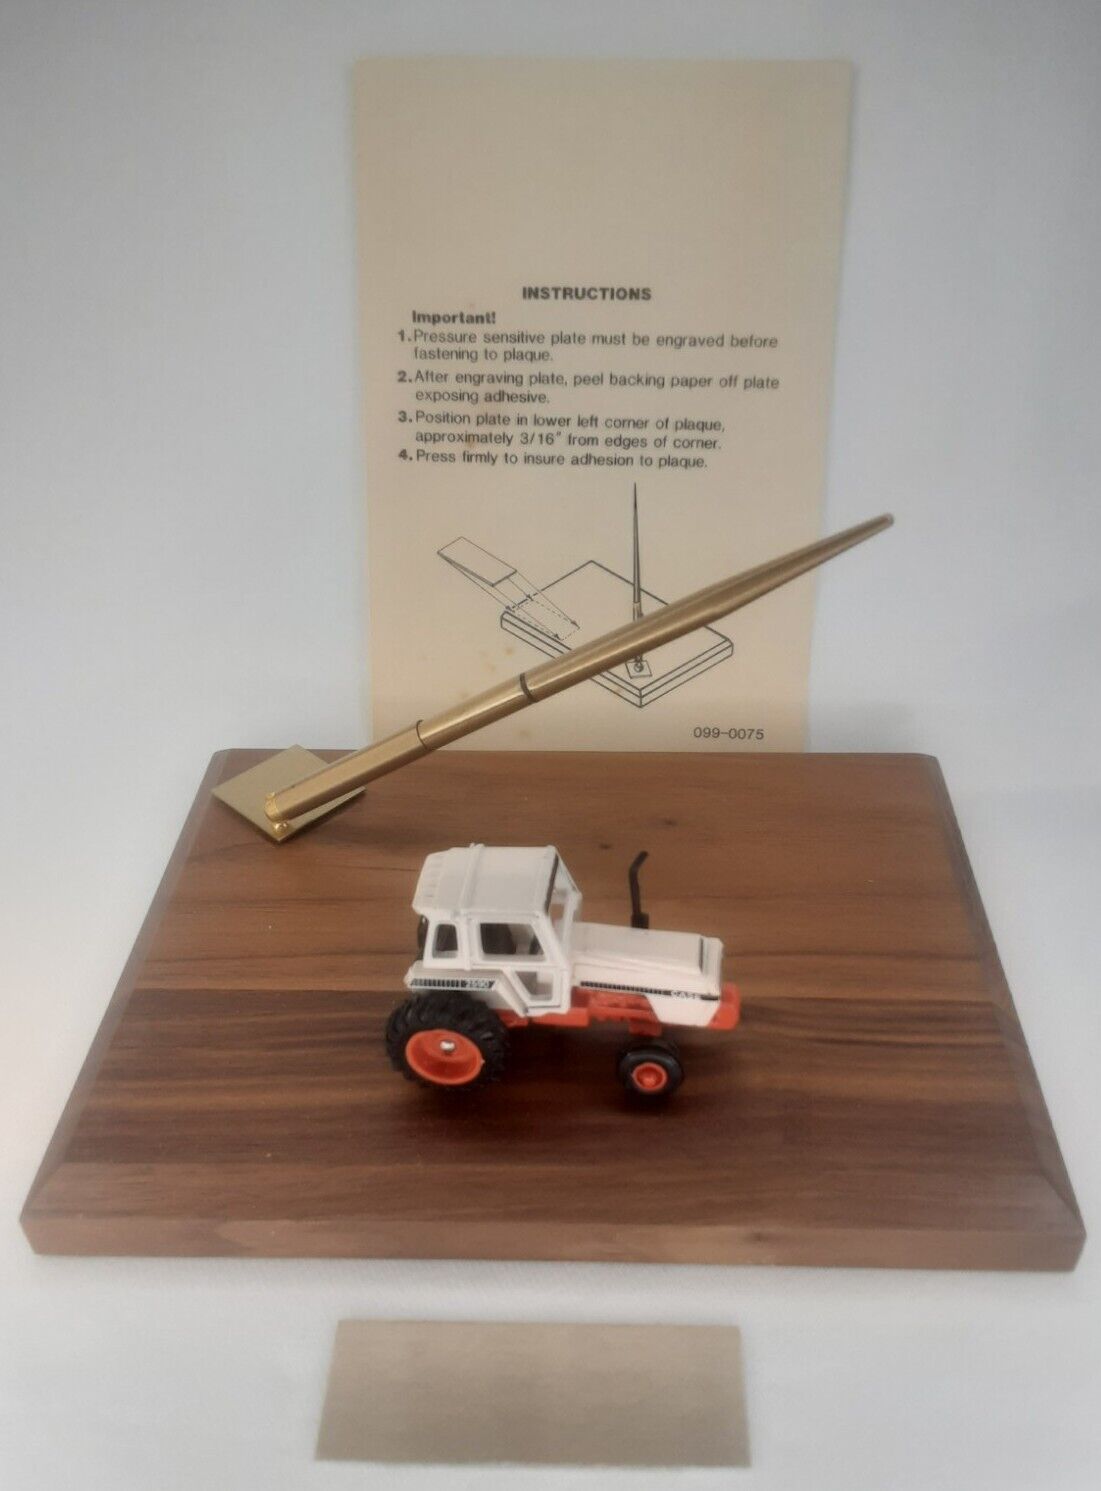 Ertl Desk Pen Set Case 2590 Tractor On Wood Base & Box Agricultural Memorabilia